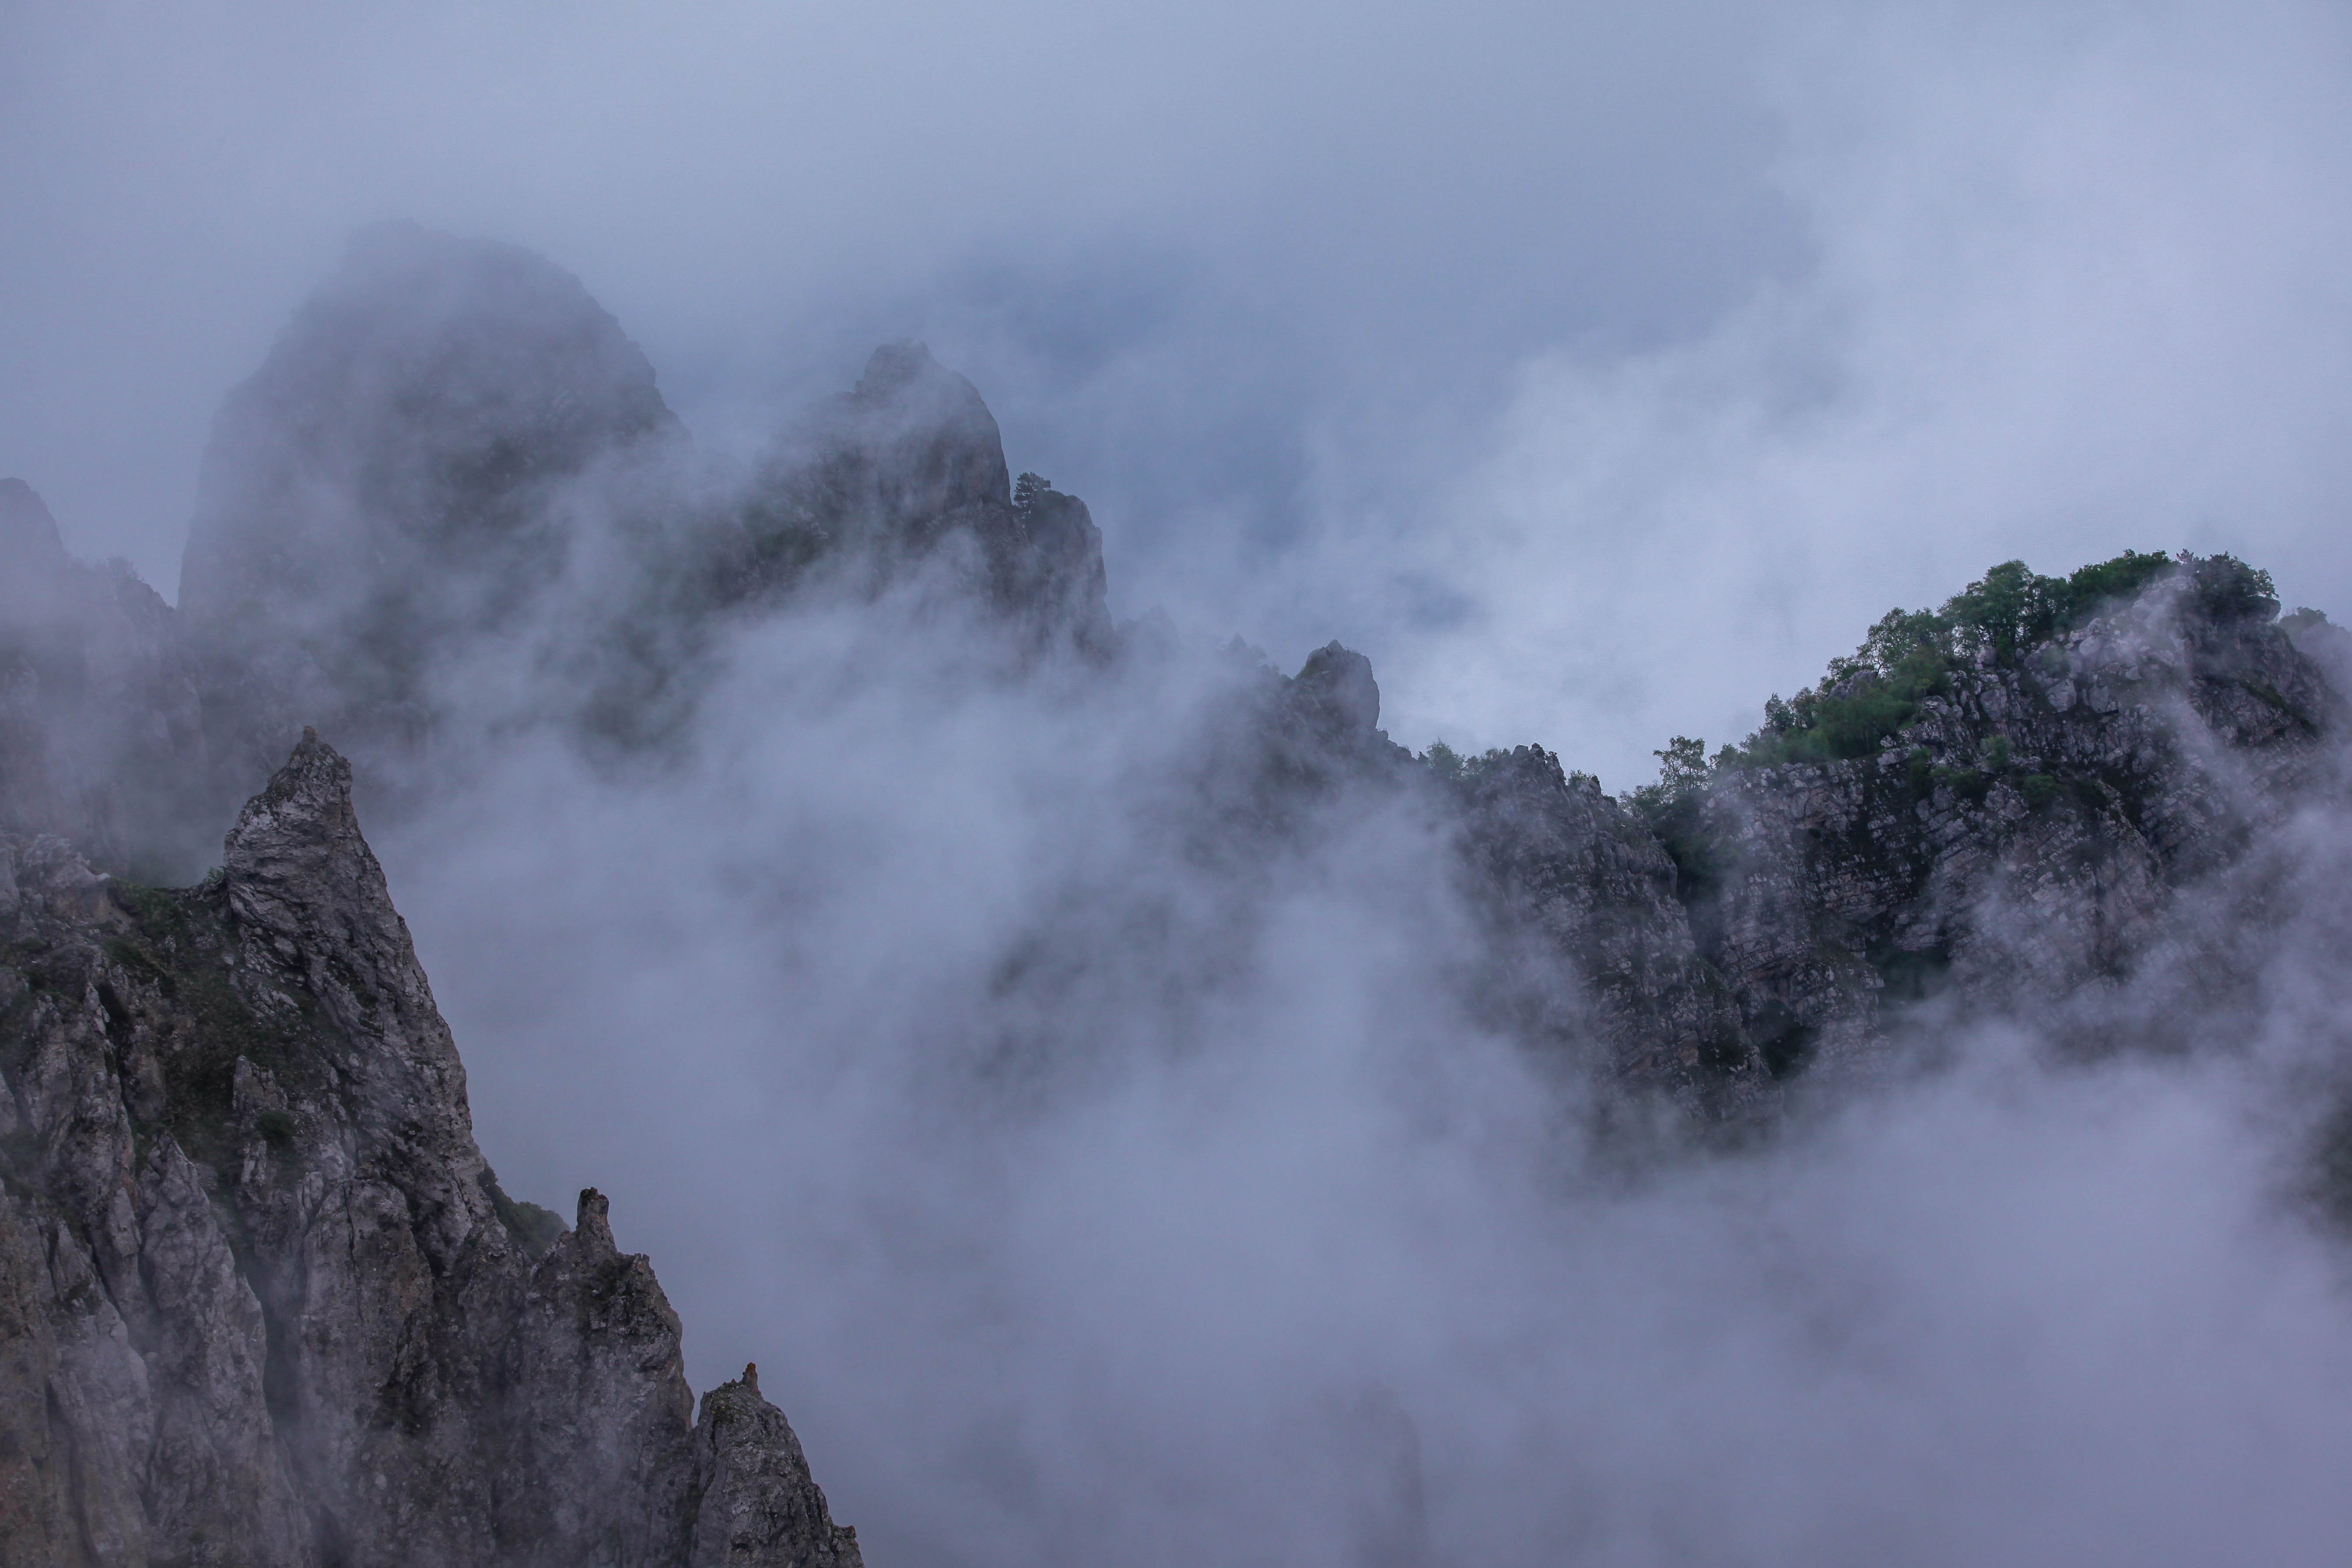 горы,лето,пейзаж,туман, Marat Magov